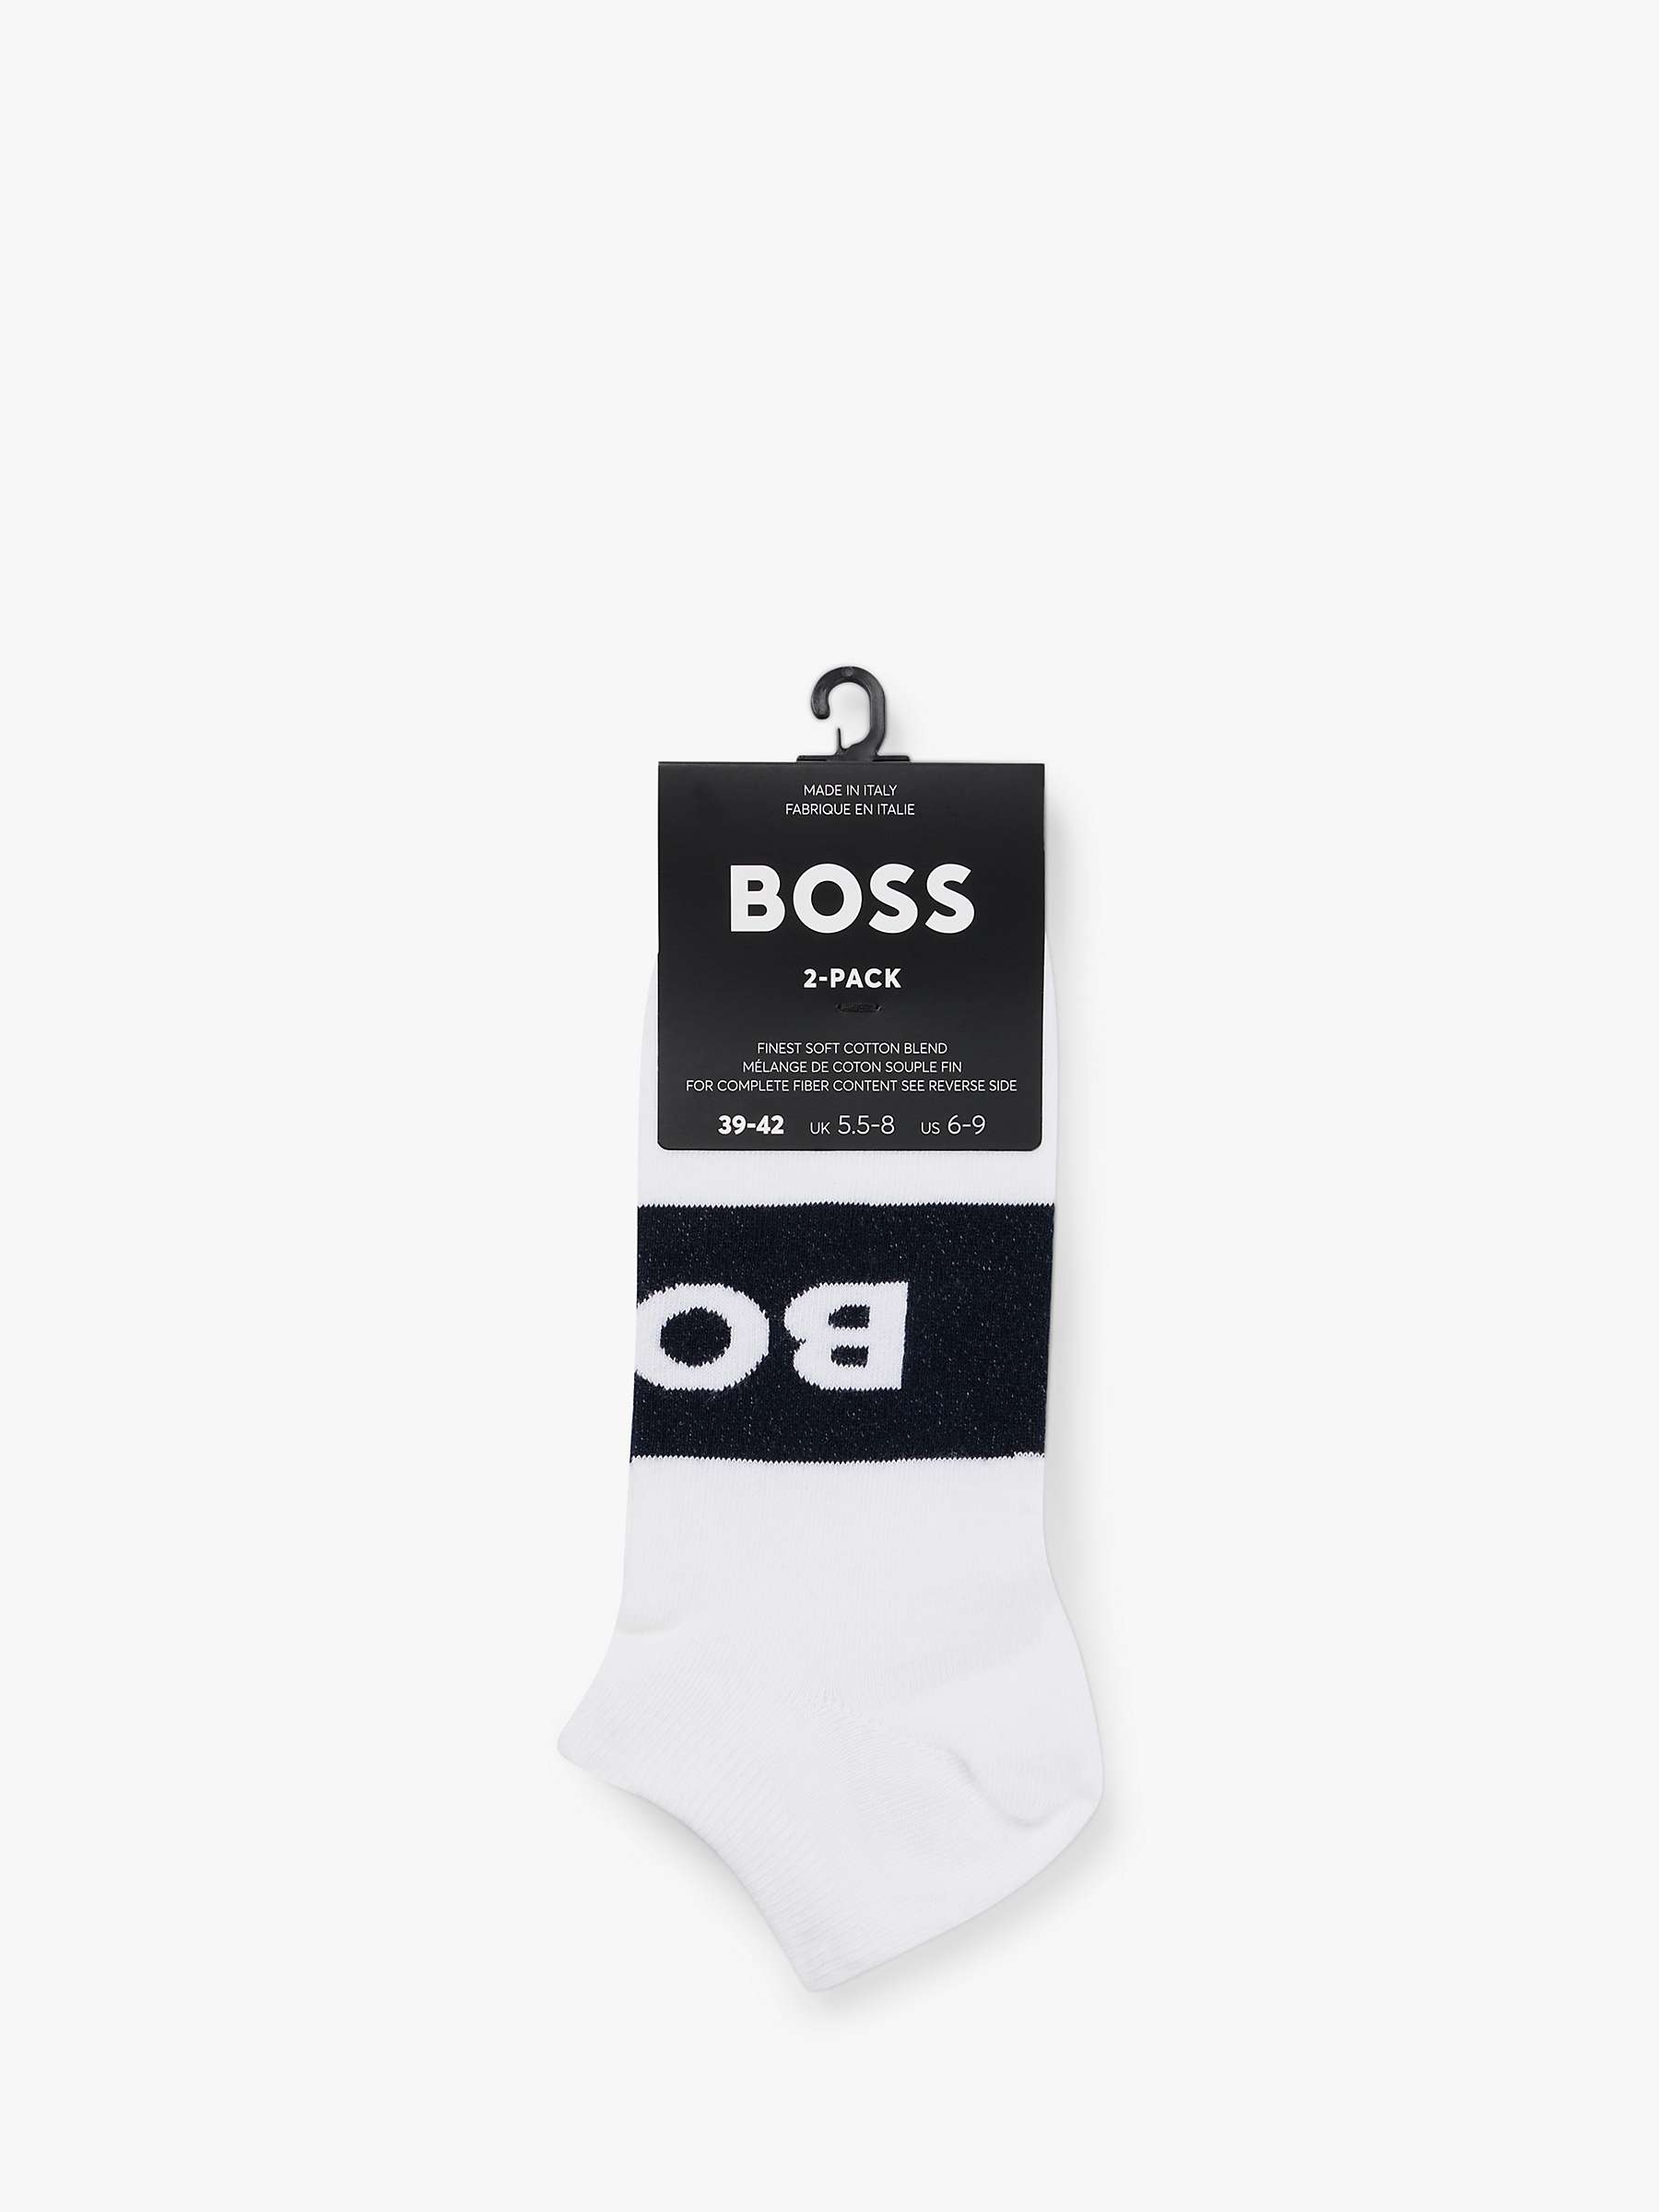 Buy BOSS Logo Ankle Socks, Pack of 2, White/Black Online at johnlewis.com